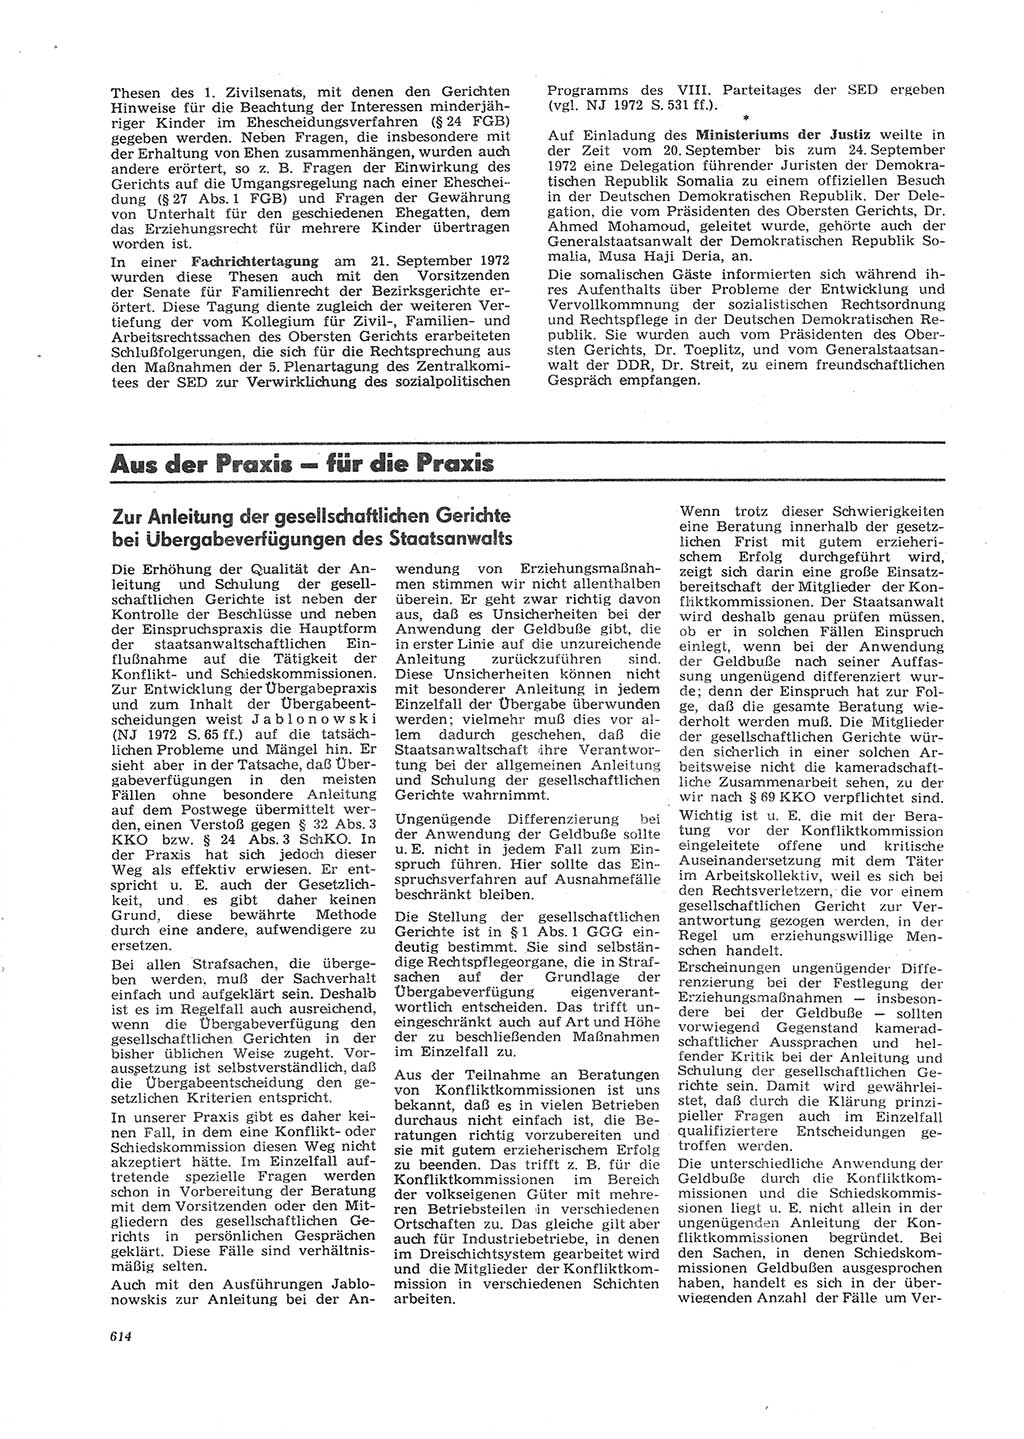 Neue Justiz (NJ), Zeitschrift für Recht und Rechtswissenschaft [Deutsche Demokratische Republik (DDR)], 26. Jahrgang 1972, Seite 614 (NJ DDR 1972, S. 614)